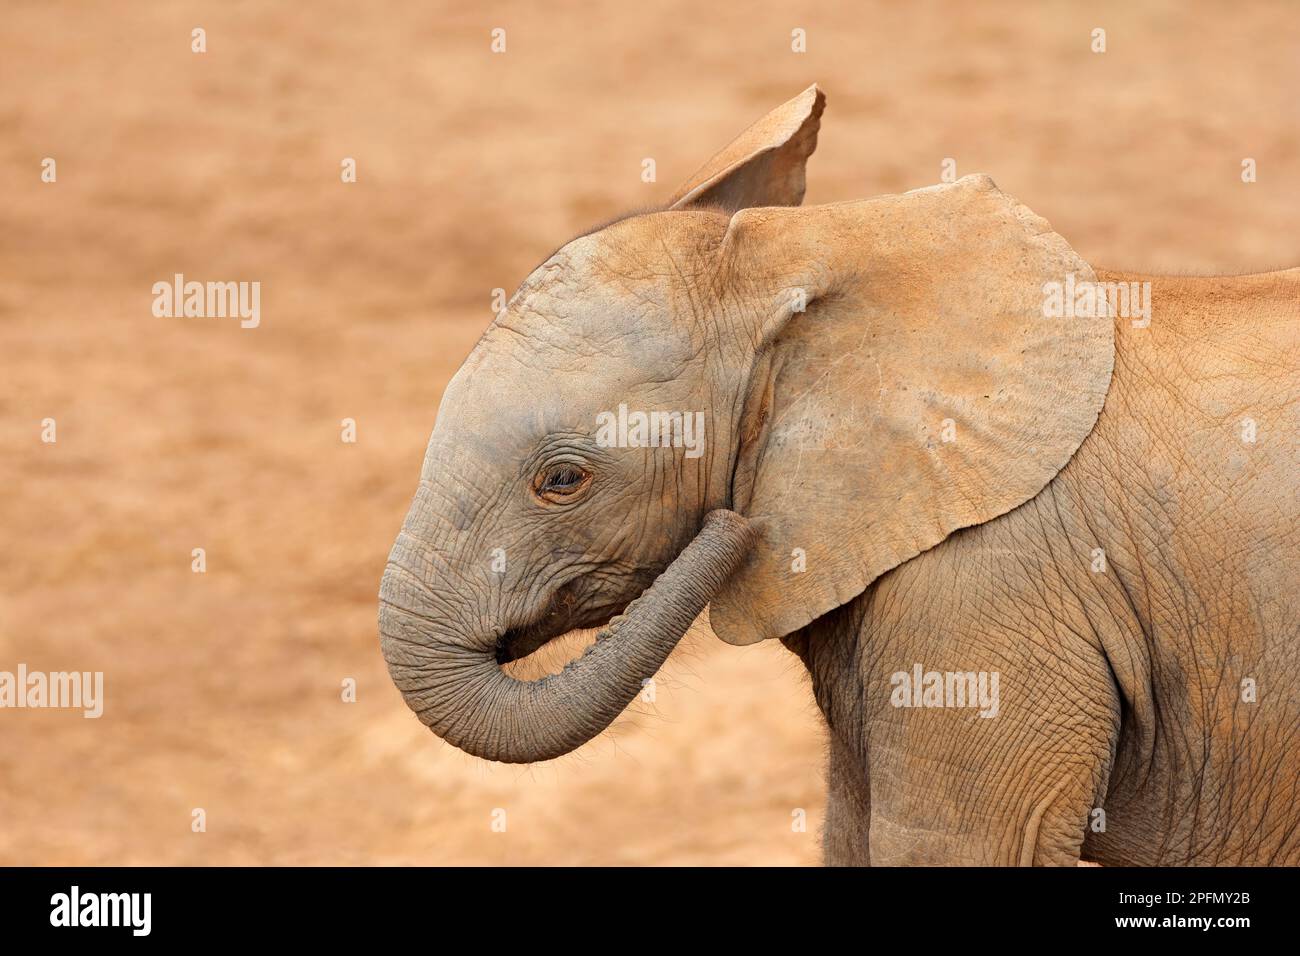 Ritratto di un giovane elefante africano (Loxodonta africana), Addo Elephant National Park, Sudafrica Foto Stock